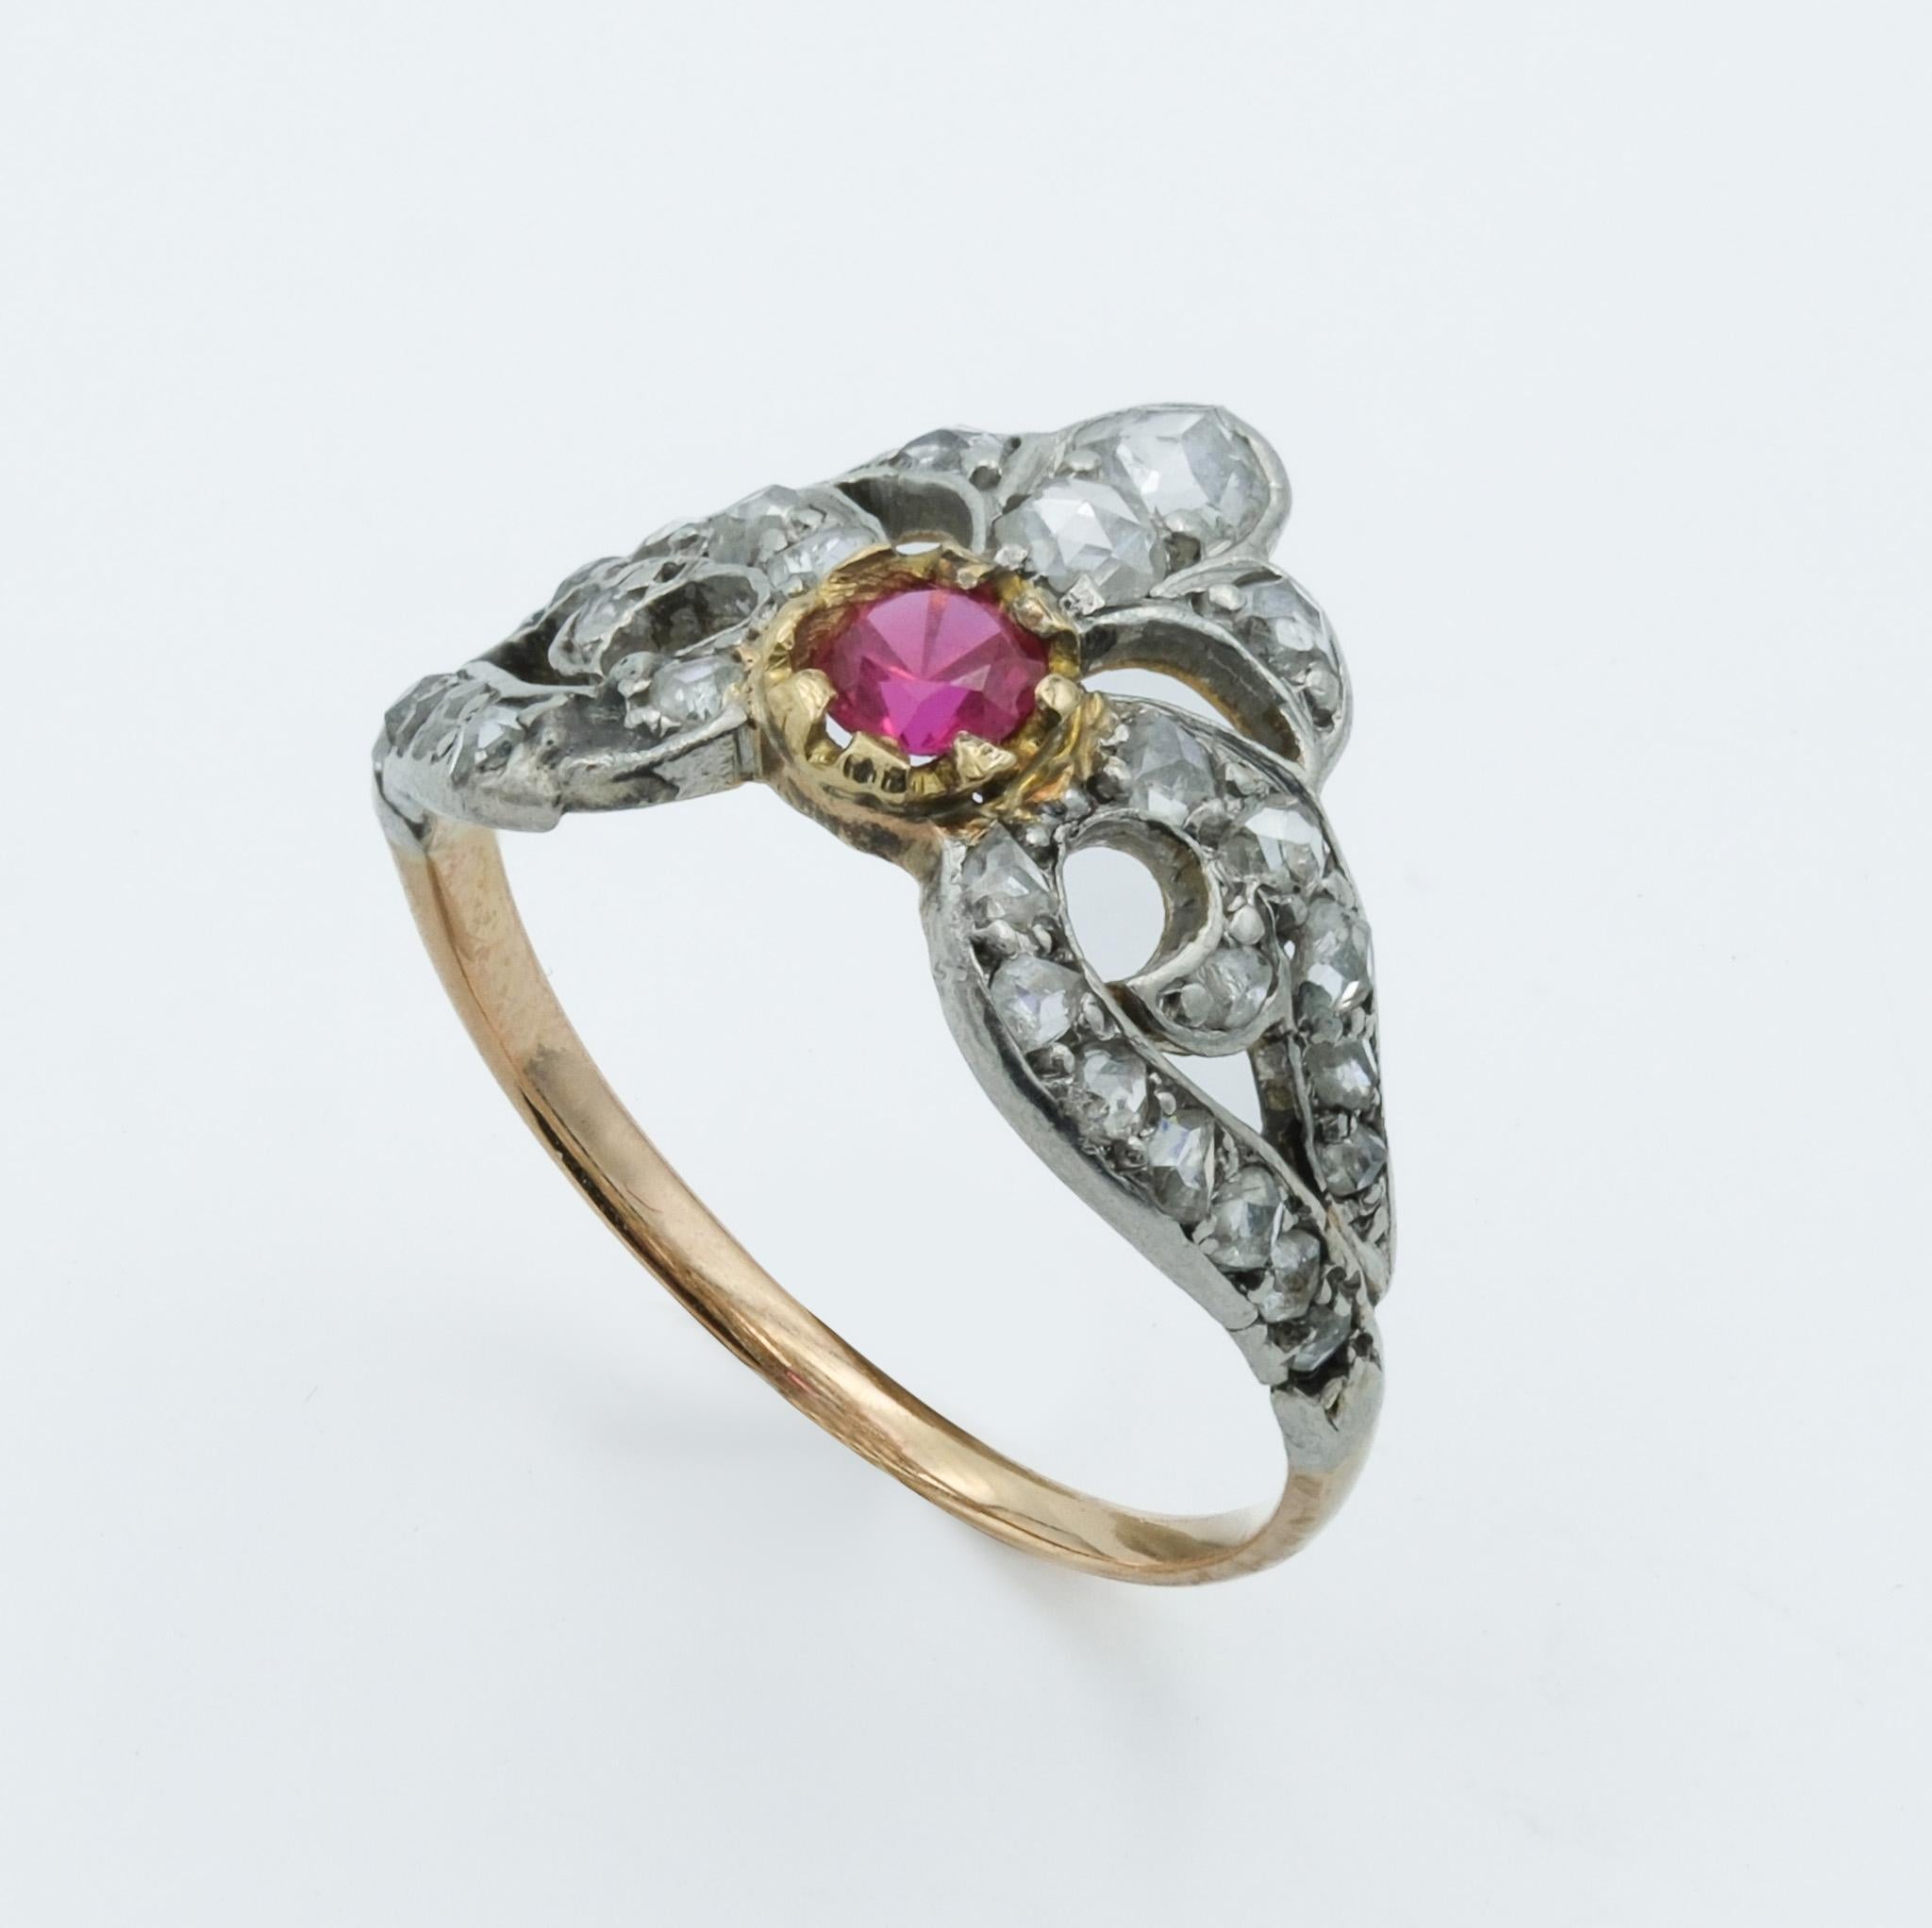 Dieser Ring aus der viktorianischen Ära ist eine atemberaubende Kombination aus 18 Karat Roségold und Platin, ein Zeugnis der Handwerkskunst dieser Zeit. In der Mitte des Rings befindet sich ein synthetischer Rubin von etwa 0,1 Karat, der in eine